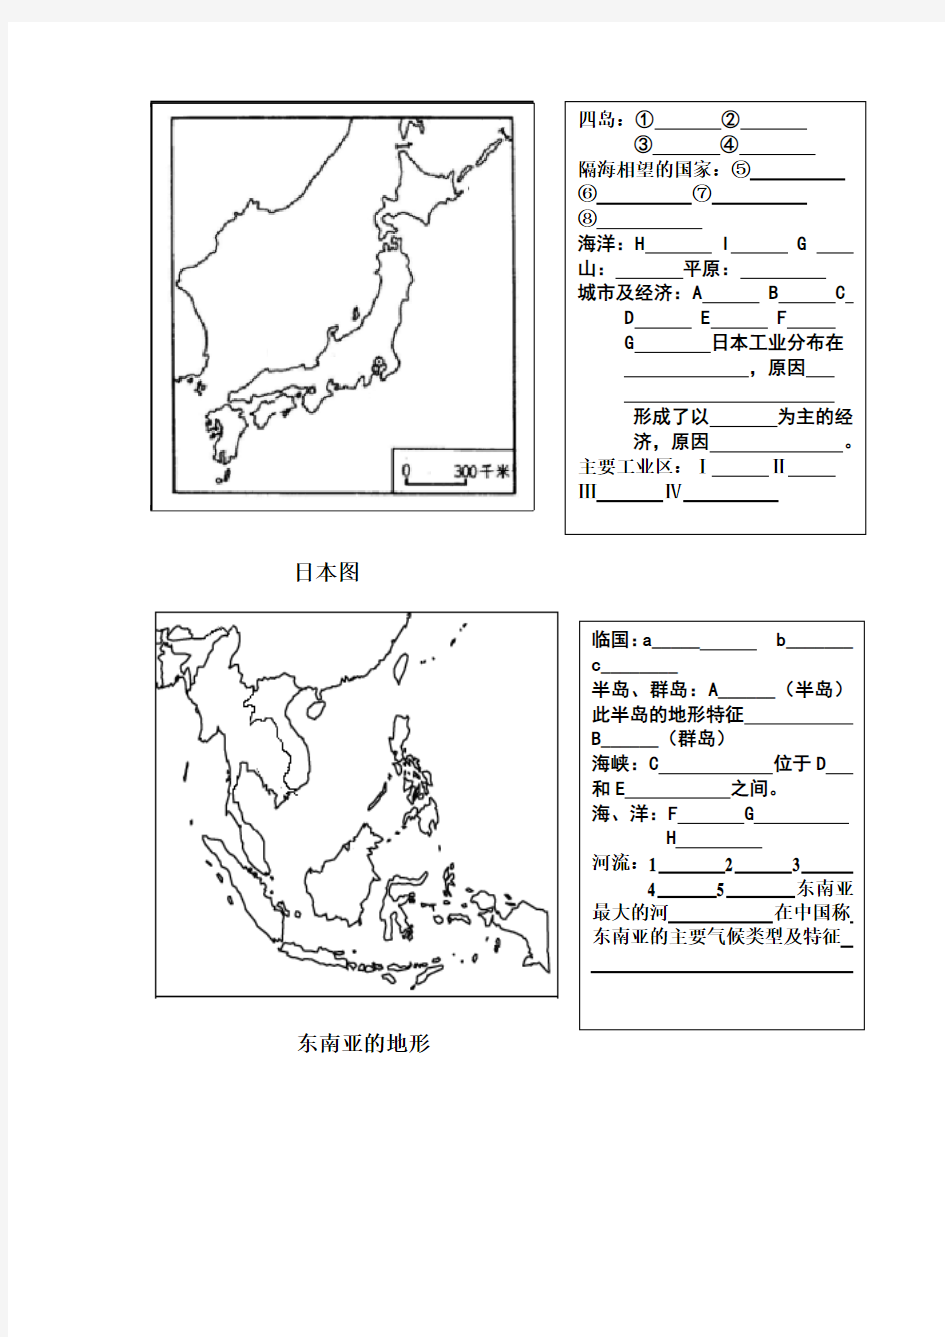 七年级下册主要地图(1)